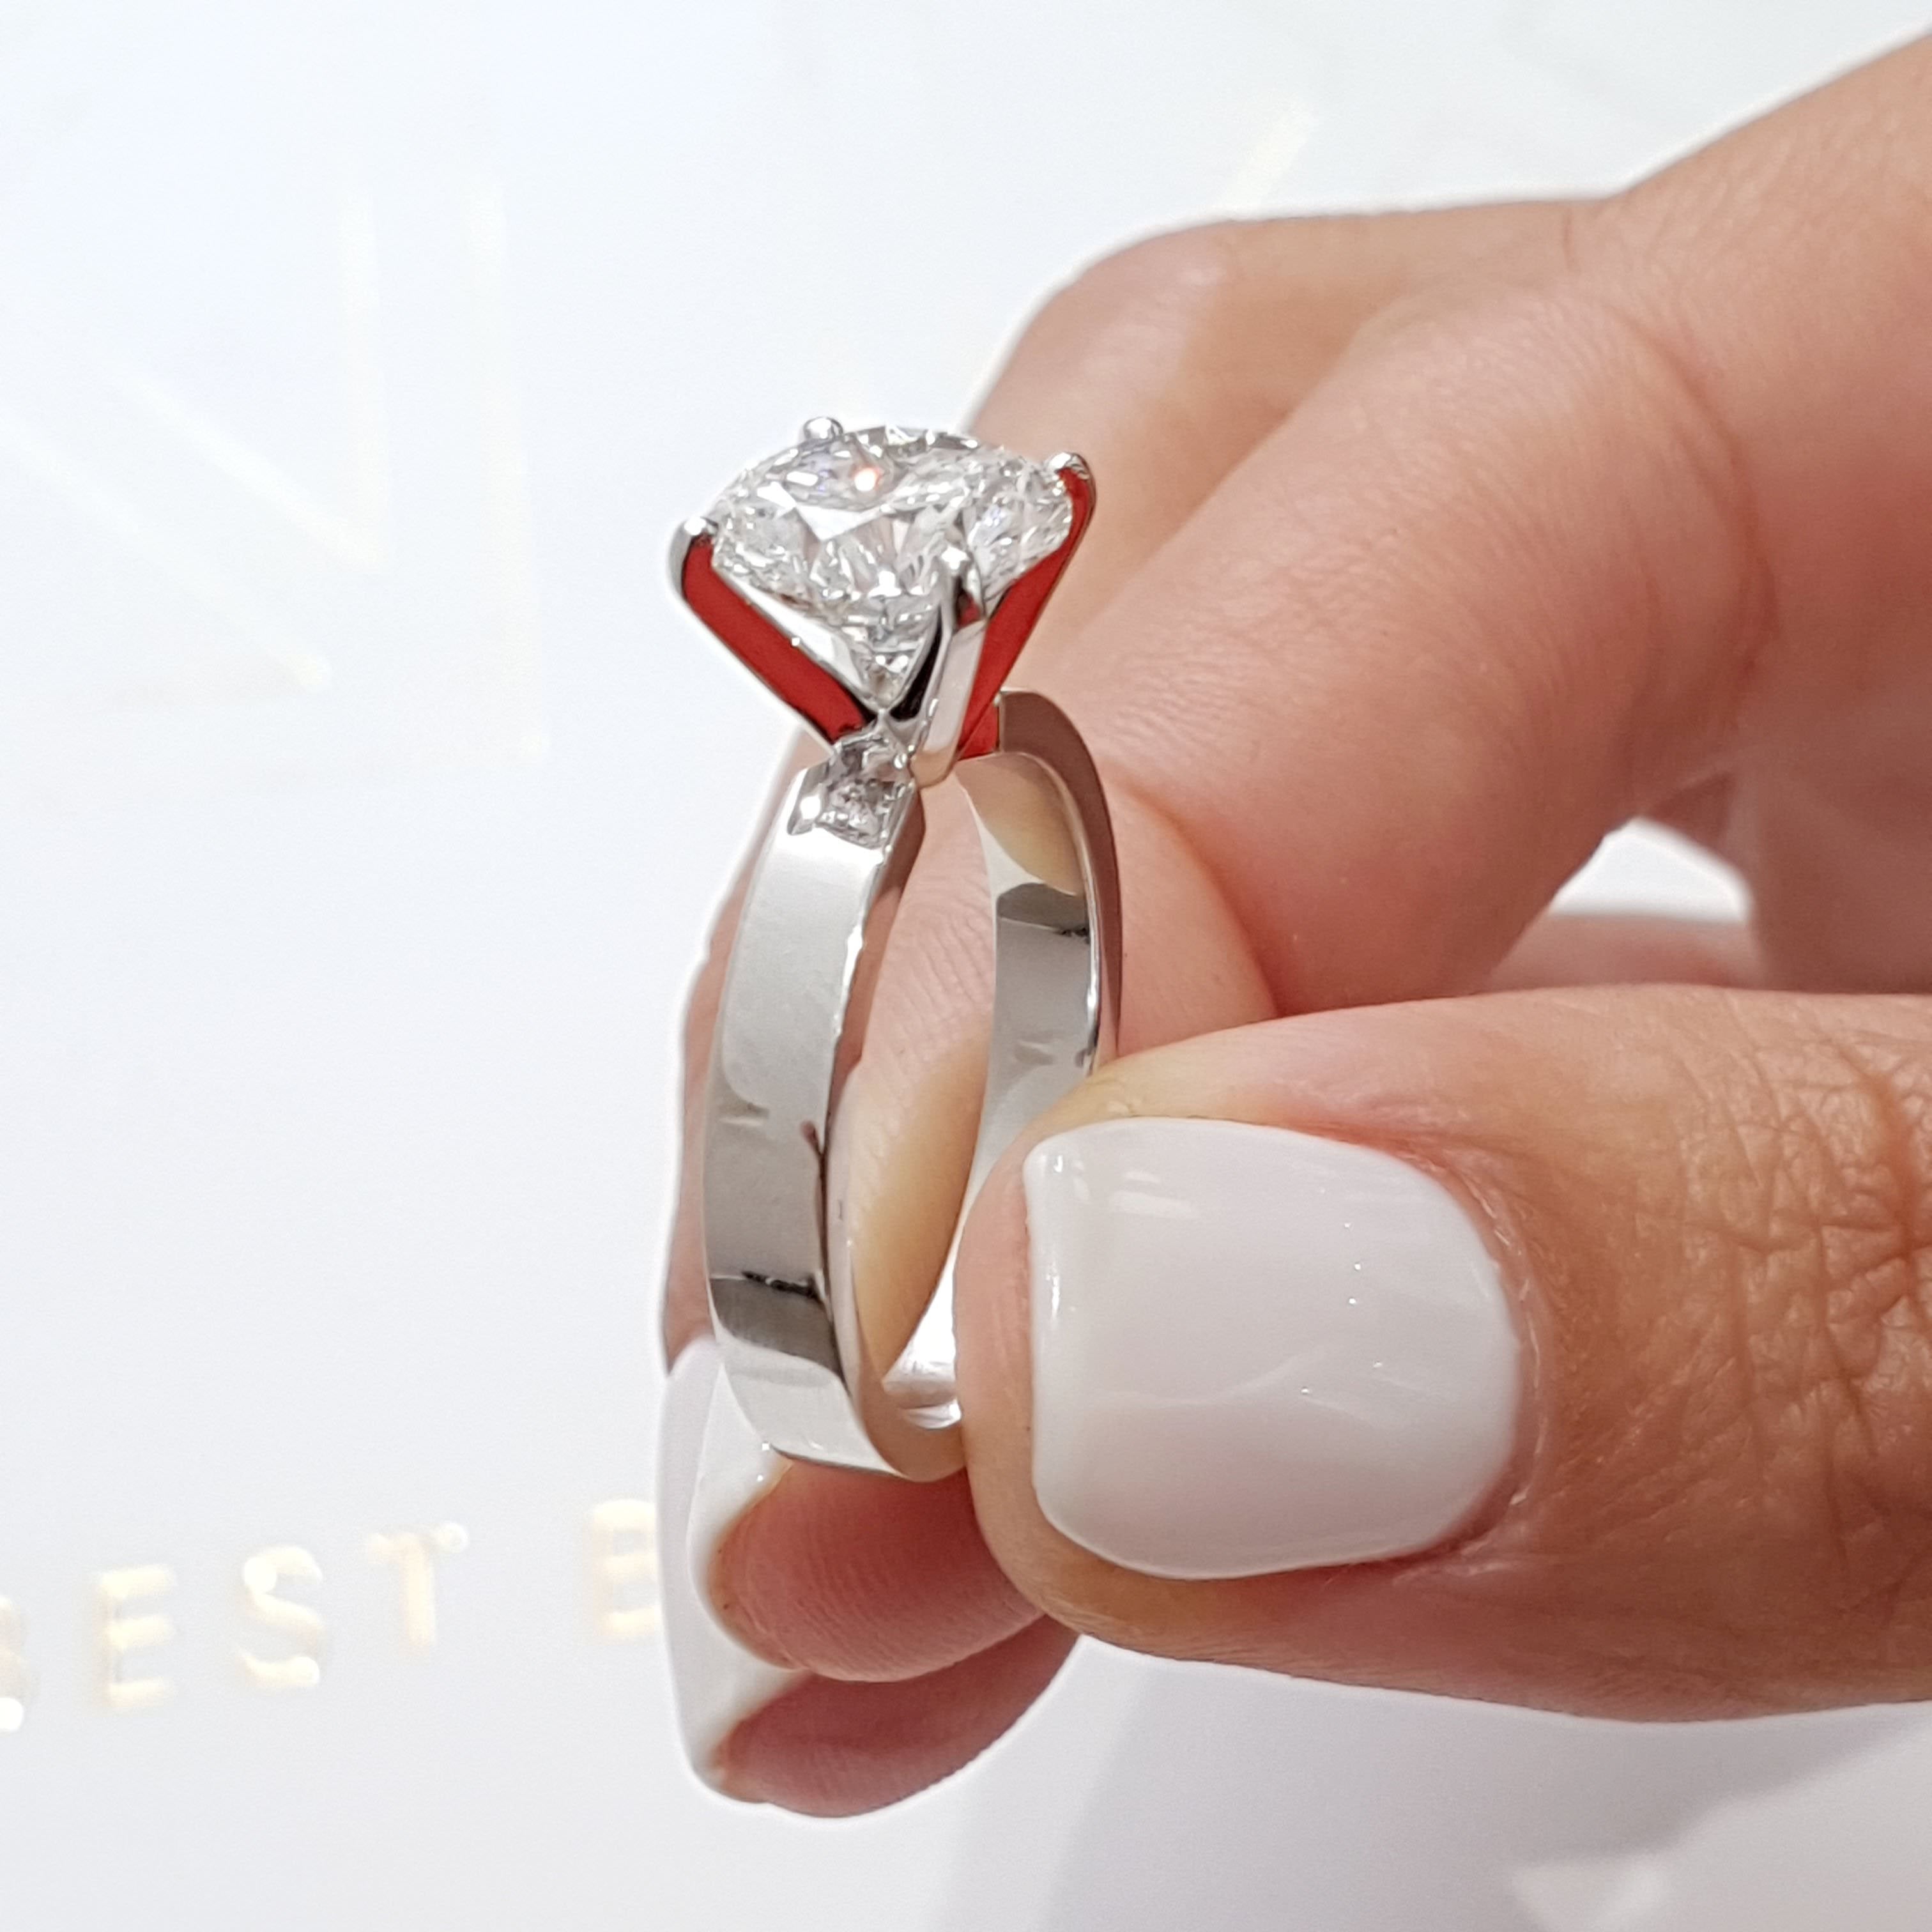 Kaia Diamond Engagement Ring   (2 Carat) -14K White Gold